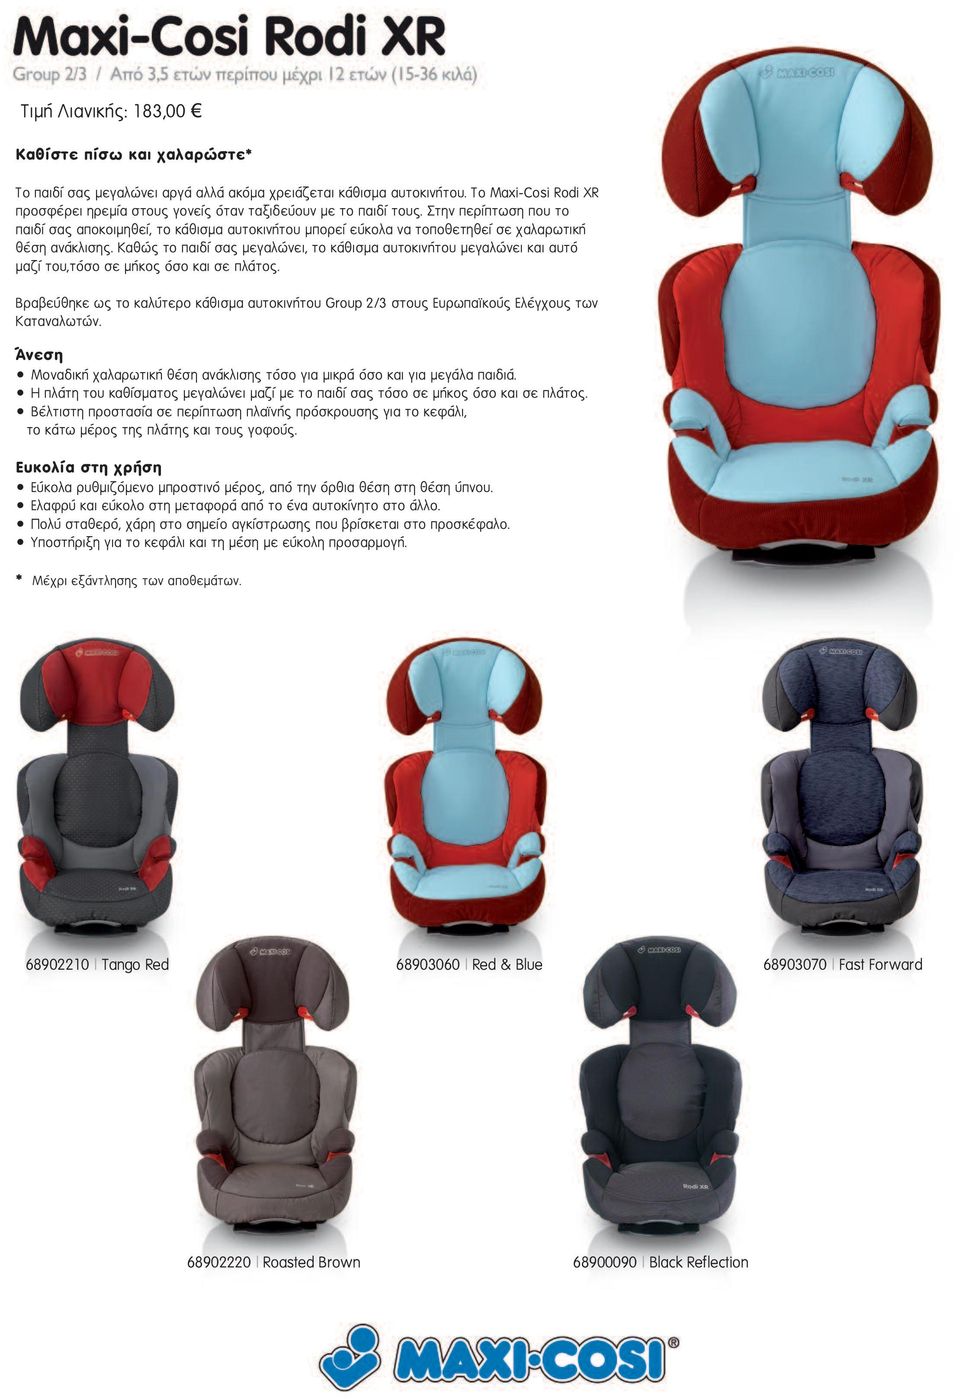 Στην περίπτωση που το παιδί σας αποκοιµηθεί, το κάθισµα αυτοκινήτου µπορεί εύκολα να τοποθετηθεί σε χαλαρωτική θέση ανάκλισης.